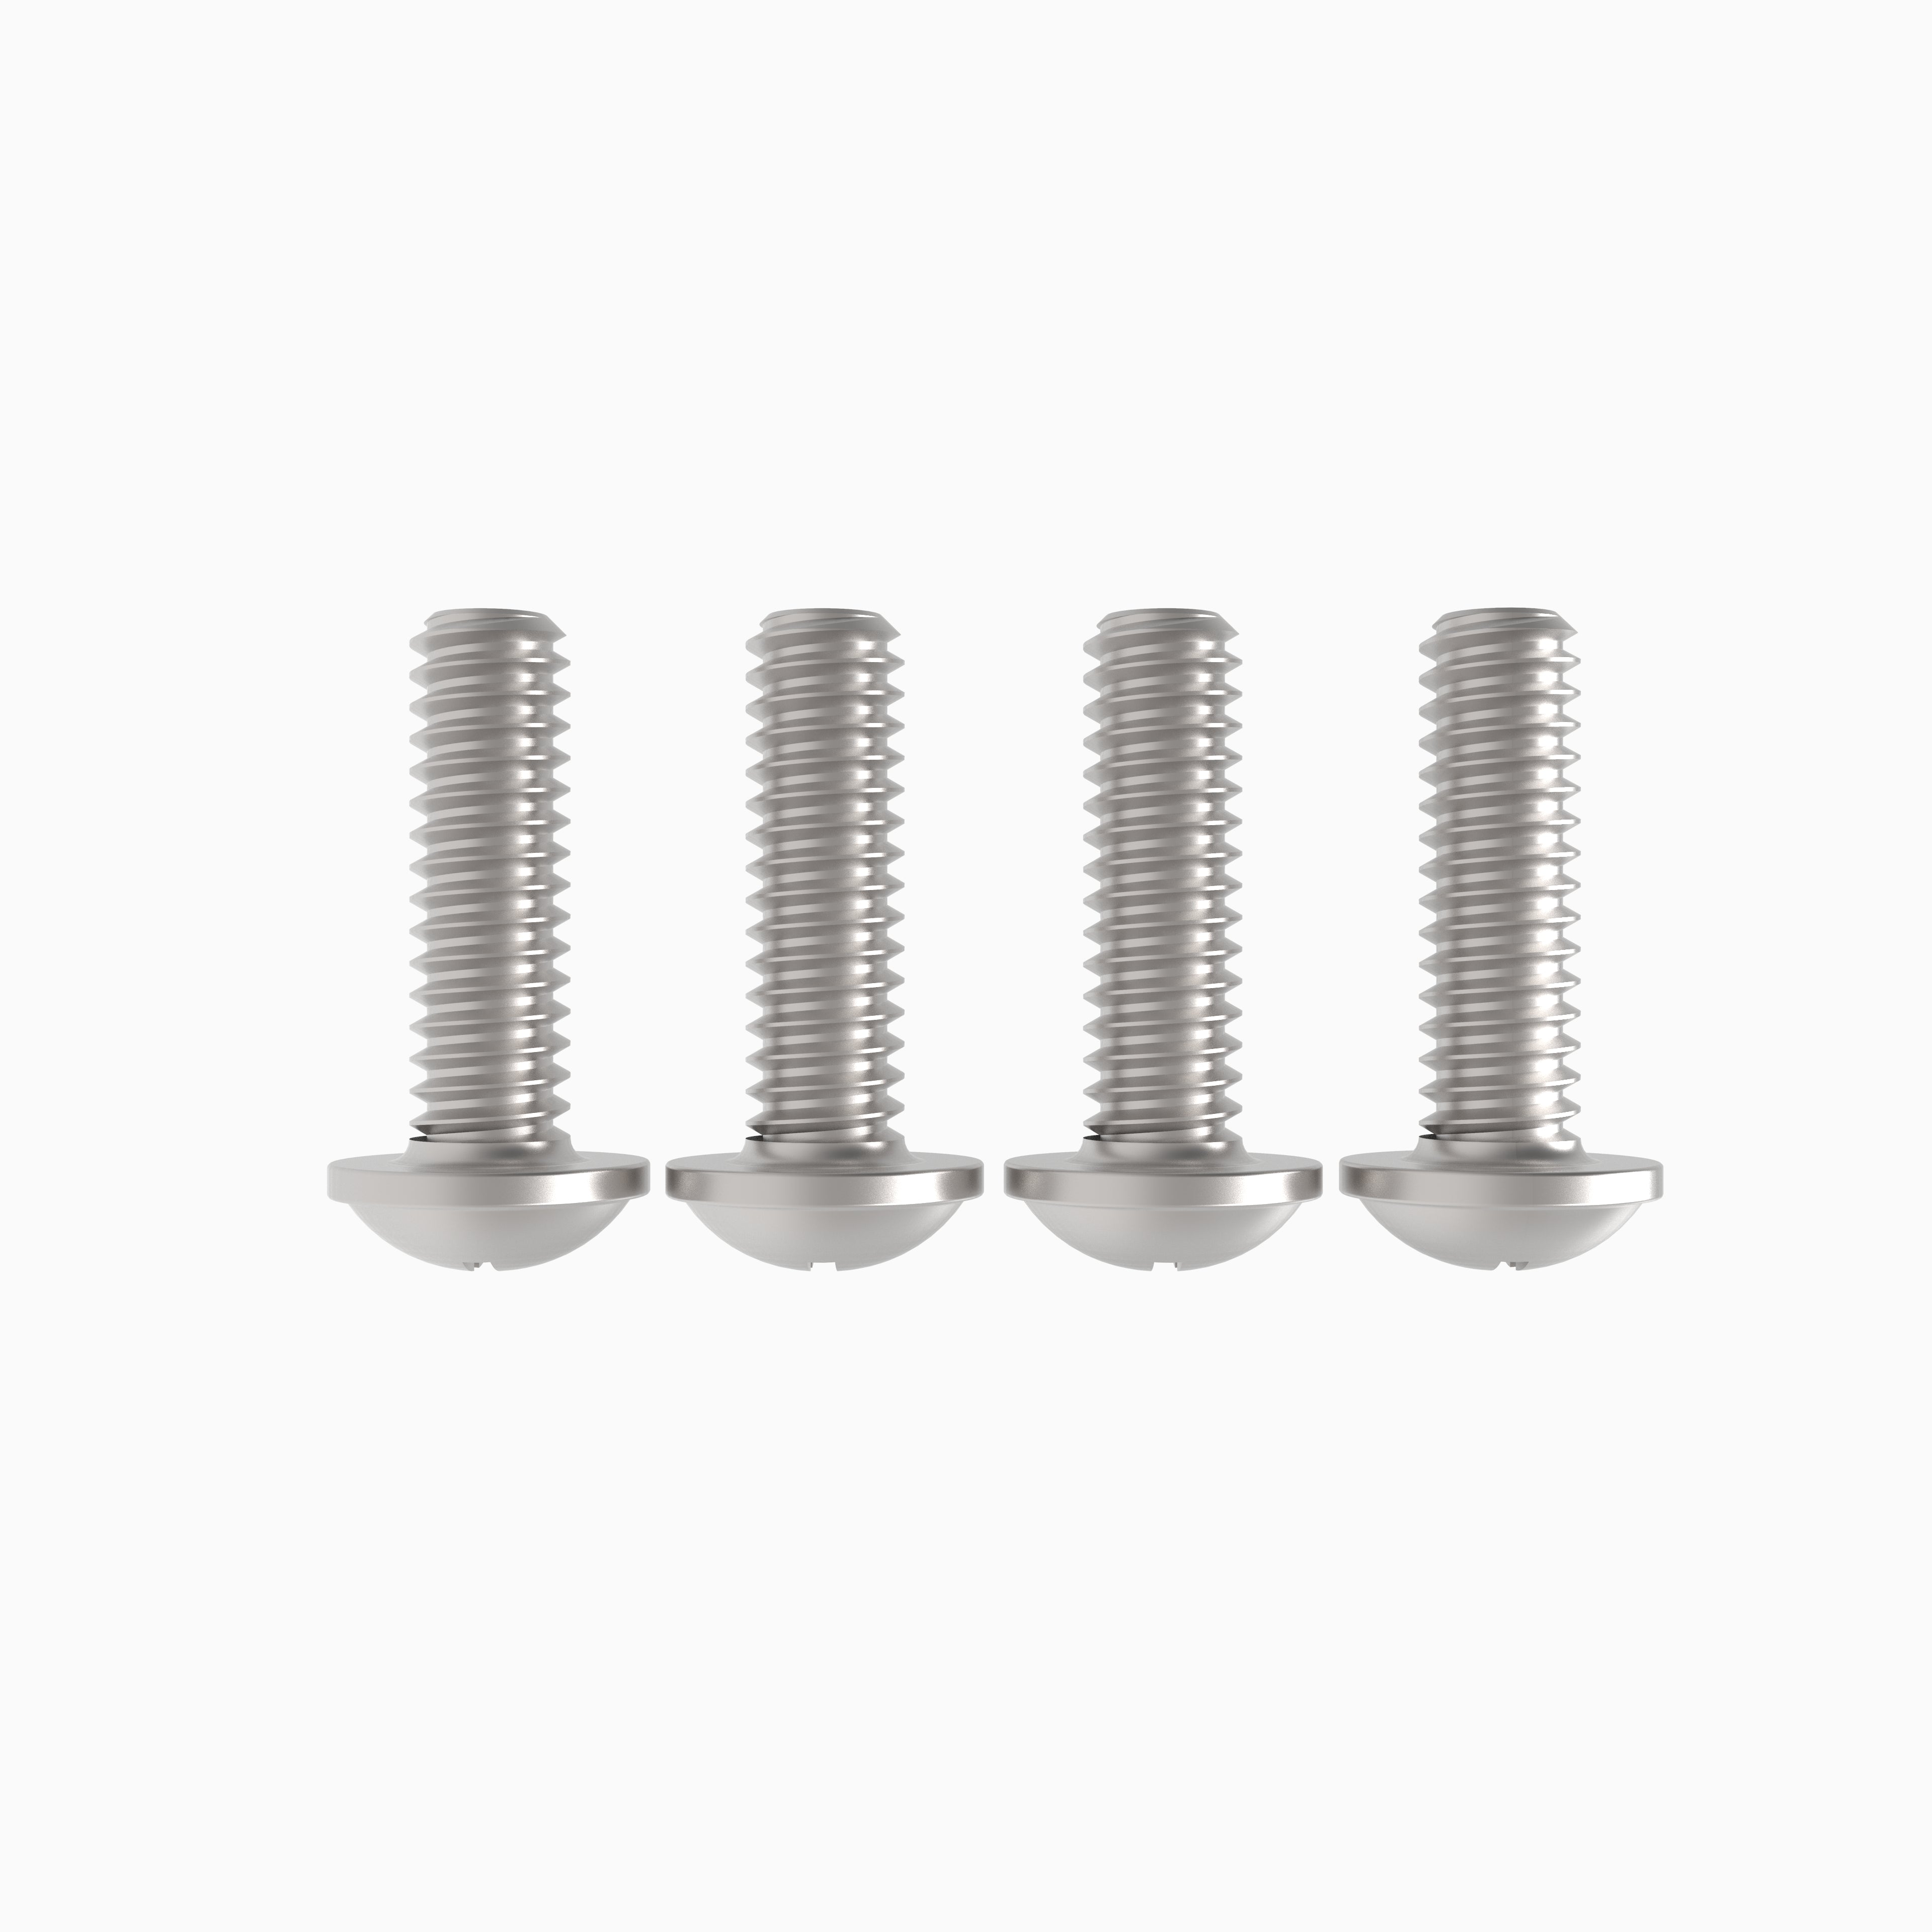 3.5 mm screws - (4 pack)